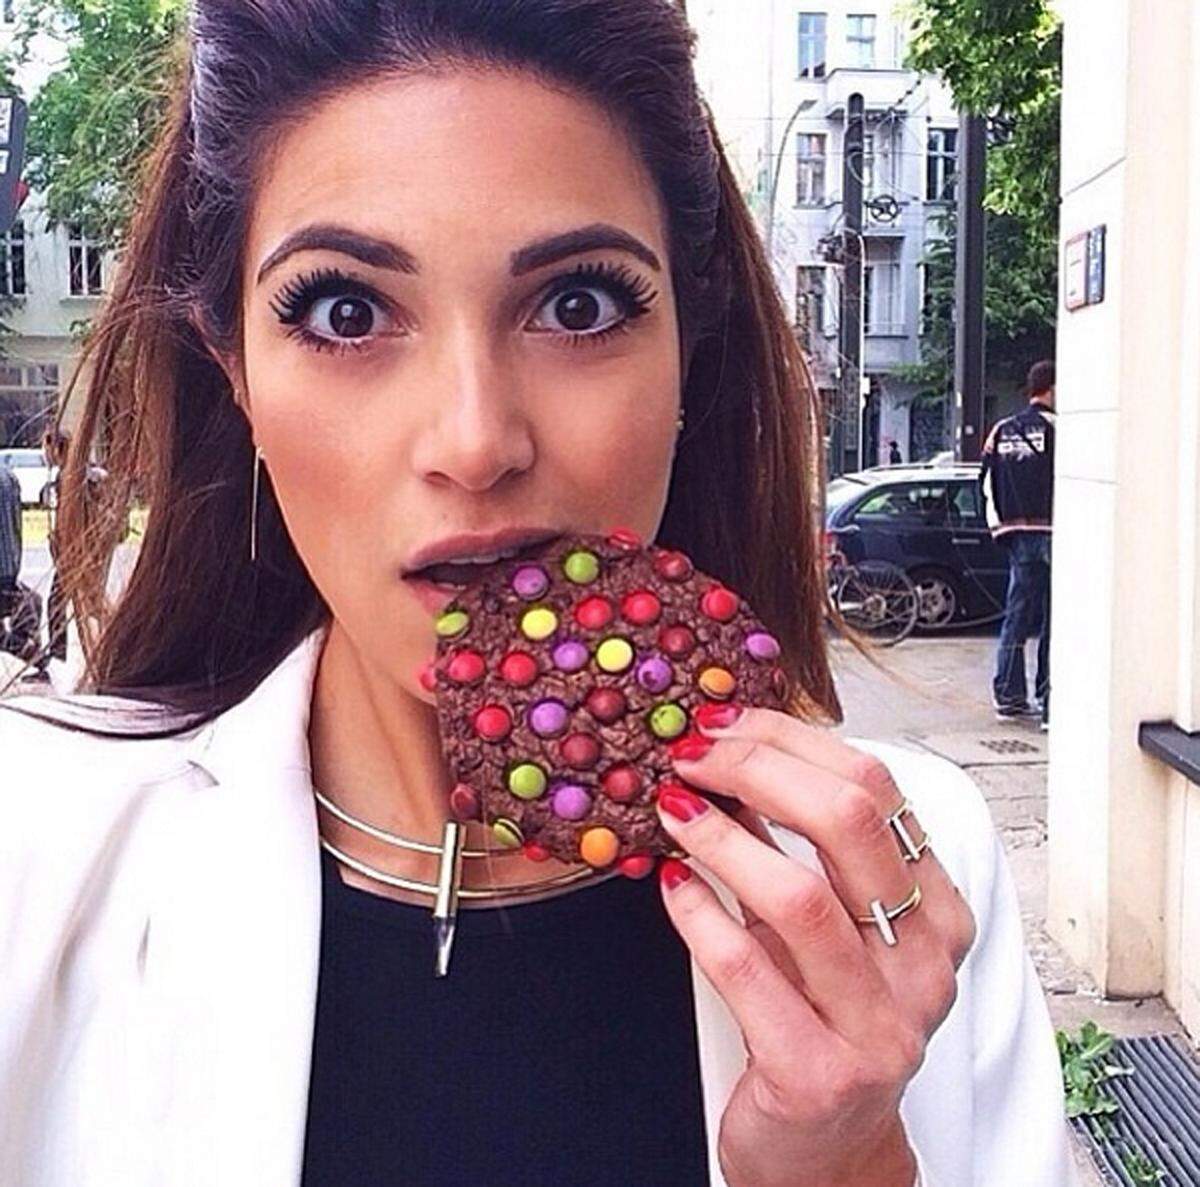 "Schaut euch die Angst in ihren Augen wegen diesem riesigen Keks, der kaum ihre Lippen berührt", heißt es dazu auf dem Account.